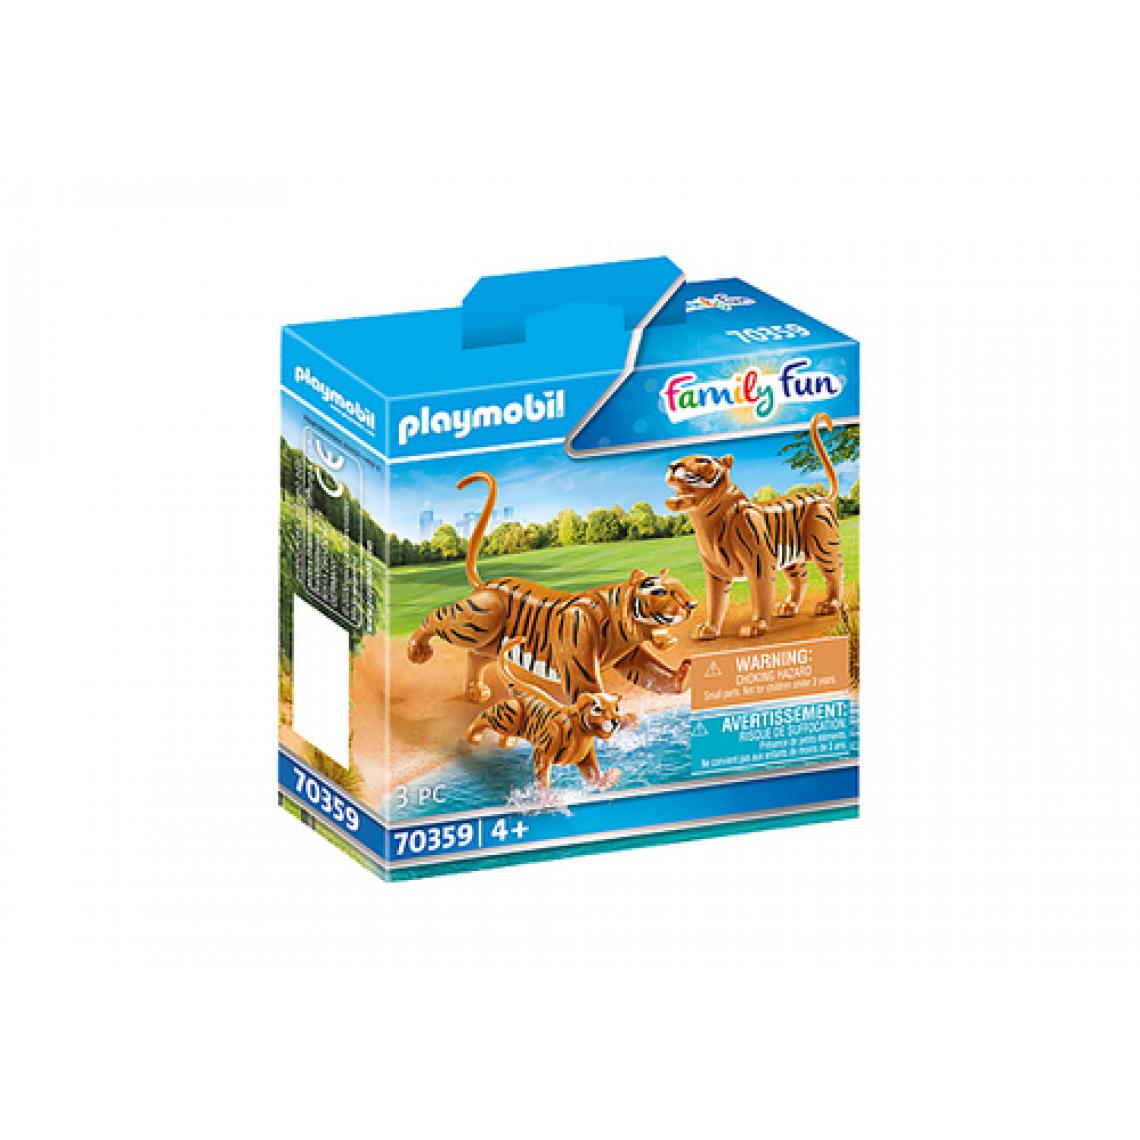 Playmobil - 70359 Couple de tigres avec bébé, Playmobil Family Fun - Playmobil